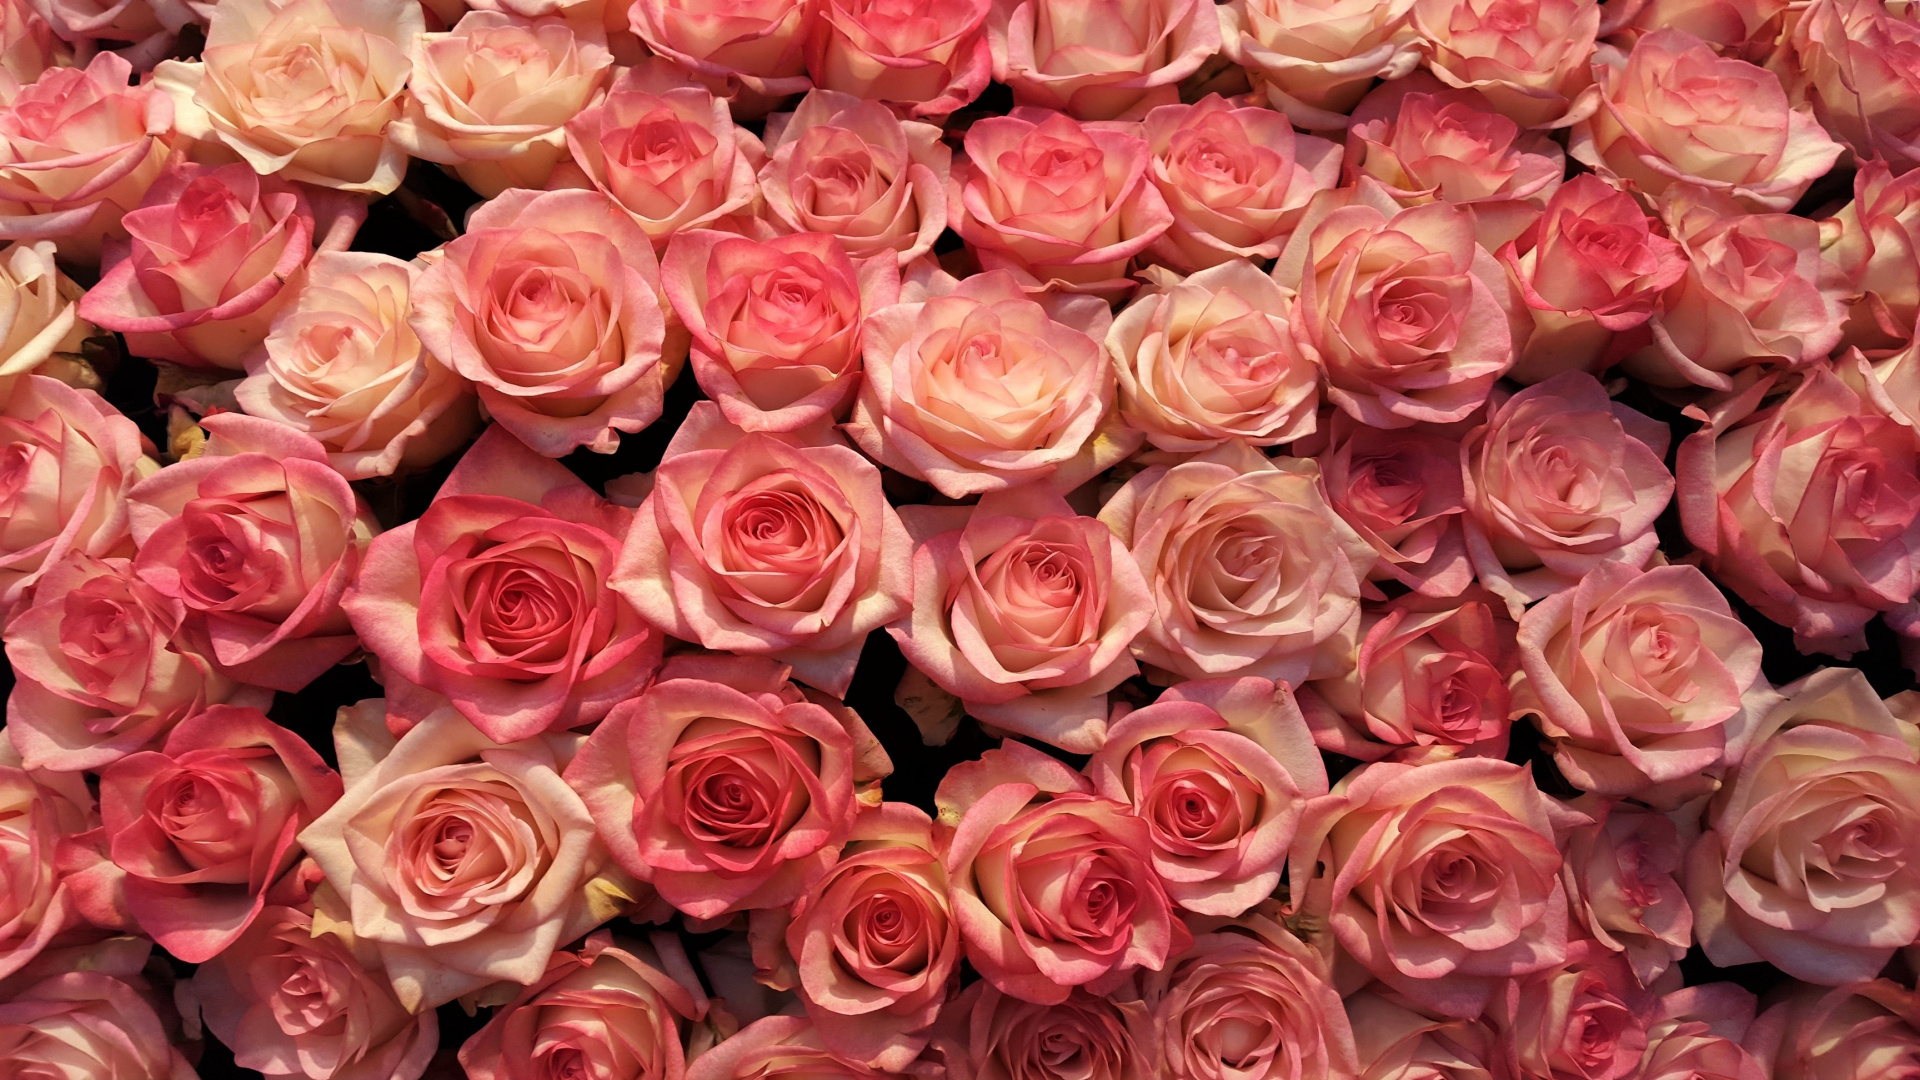 Картинка с букетом из прекрасных роз